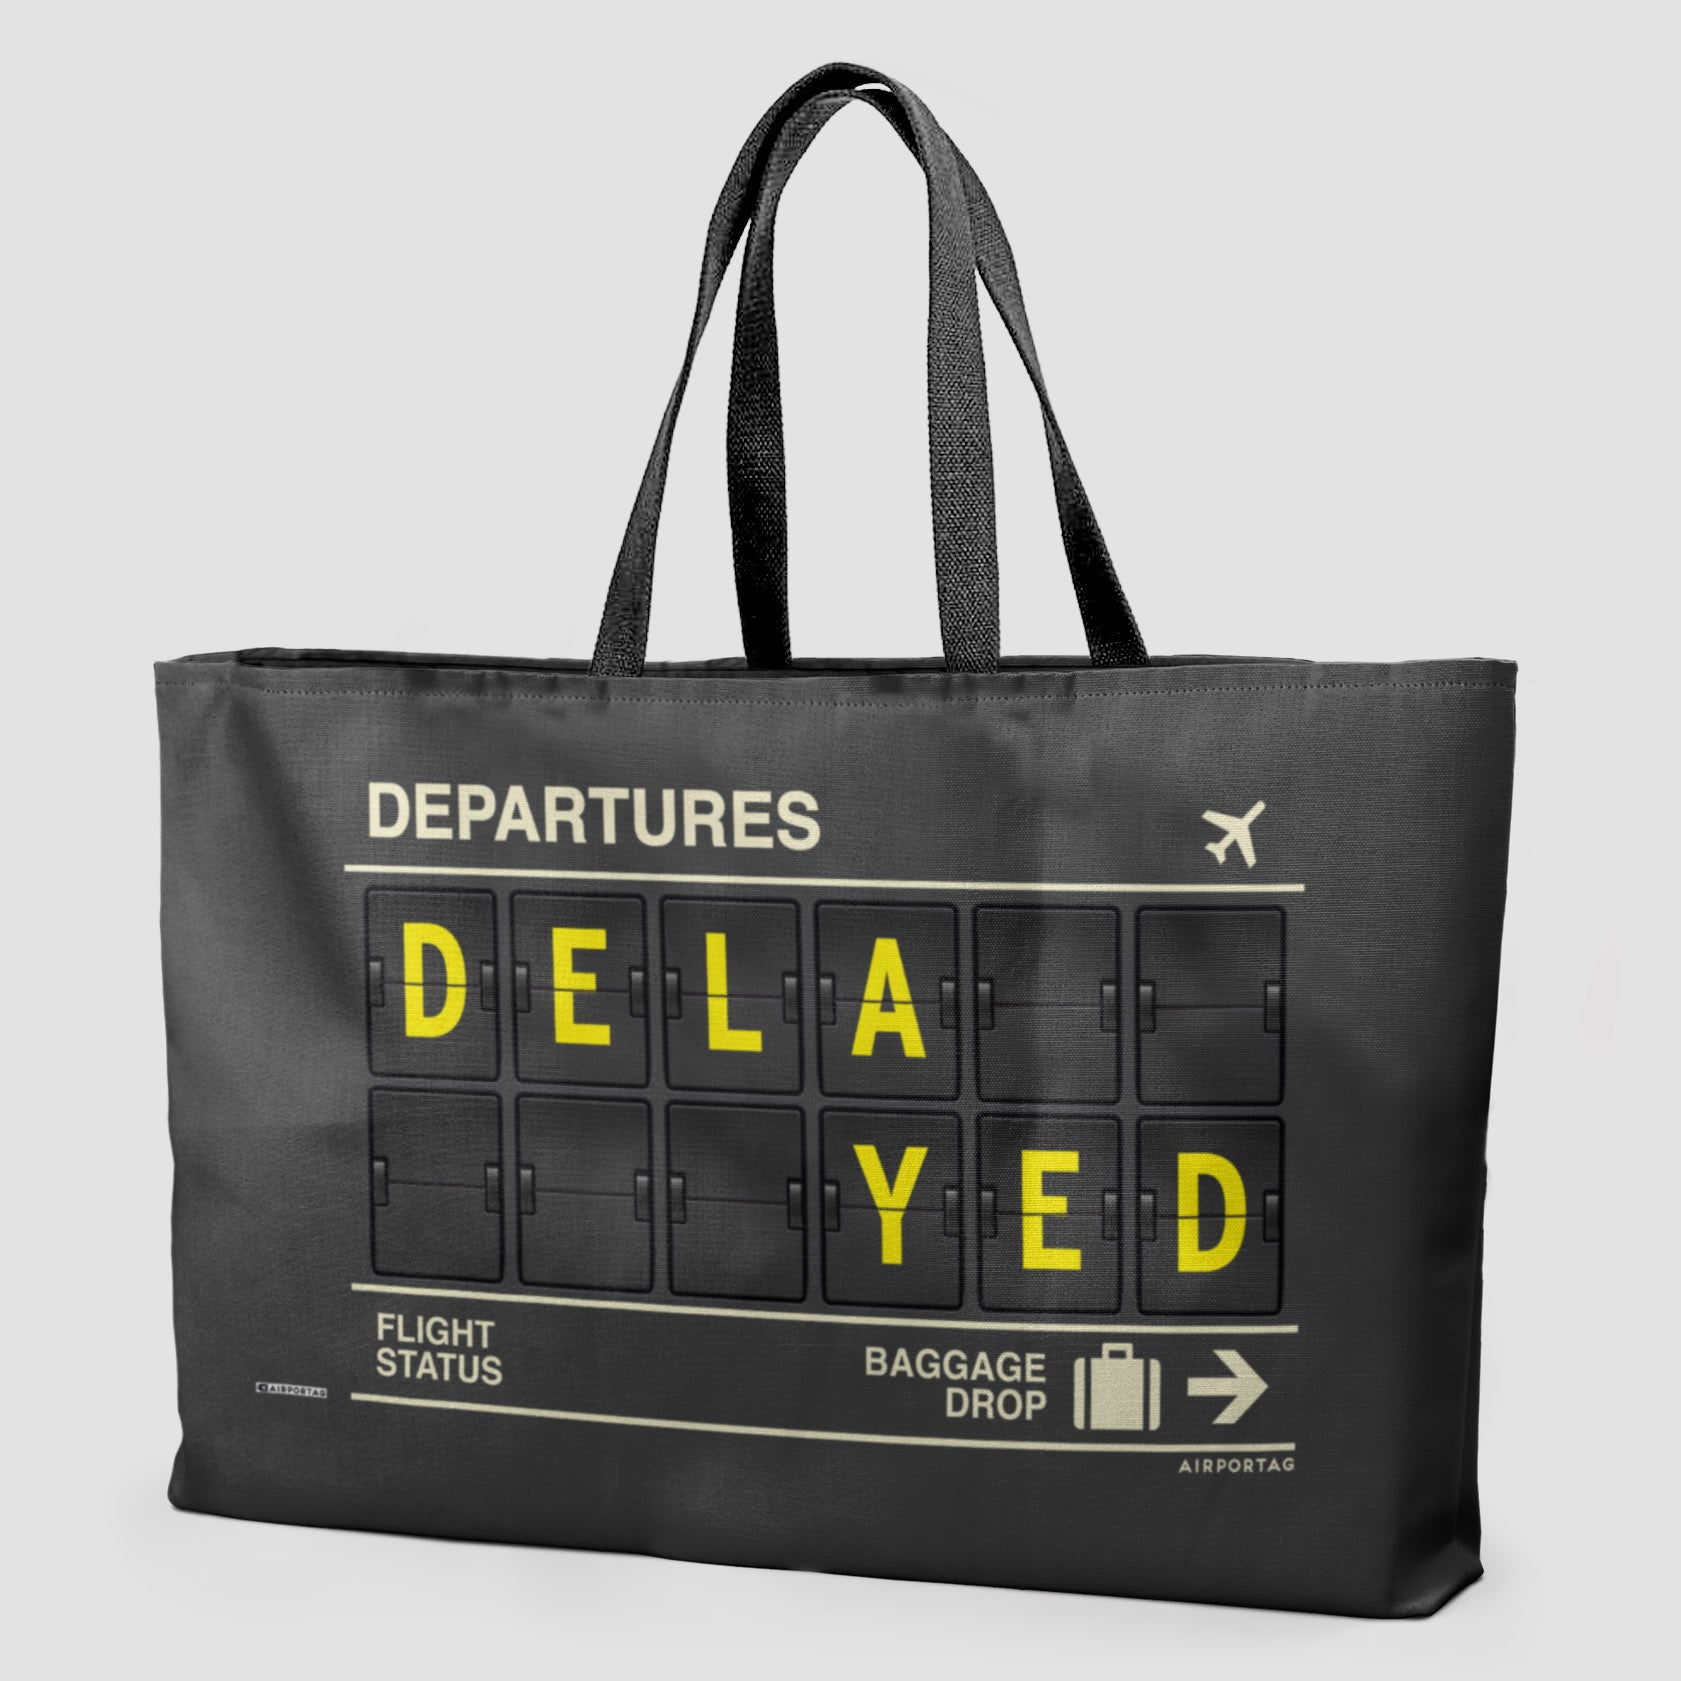 Delayed - Weekender Bag - Airportag